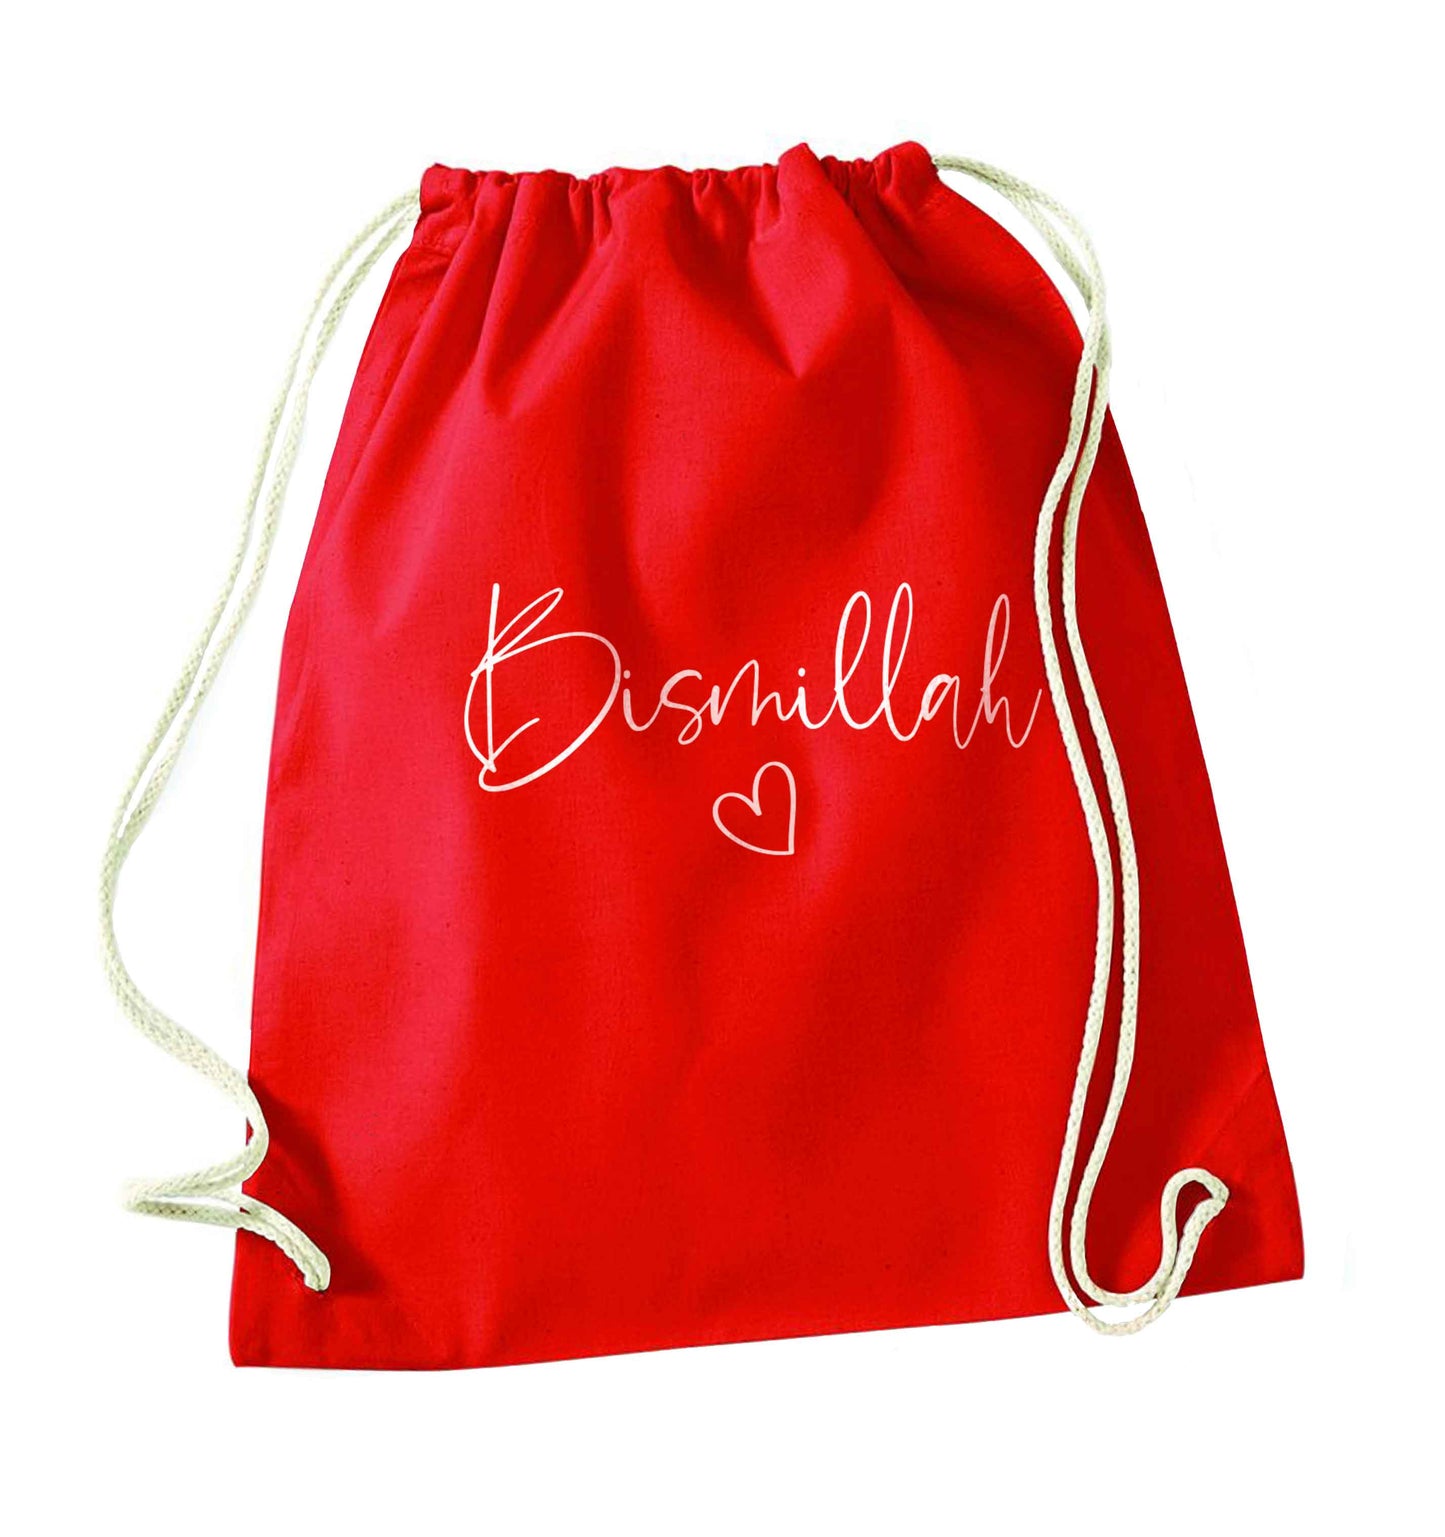 Bismillah red drawstring bag 